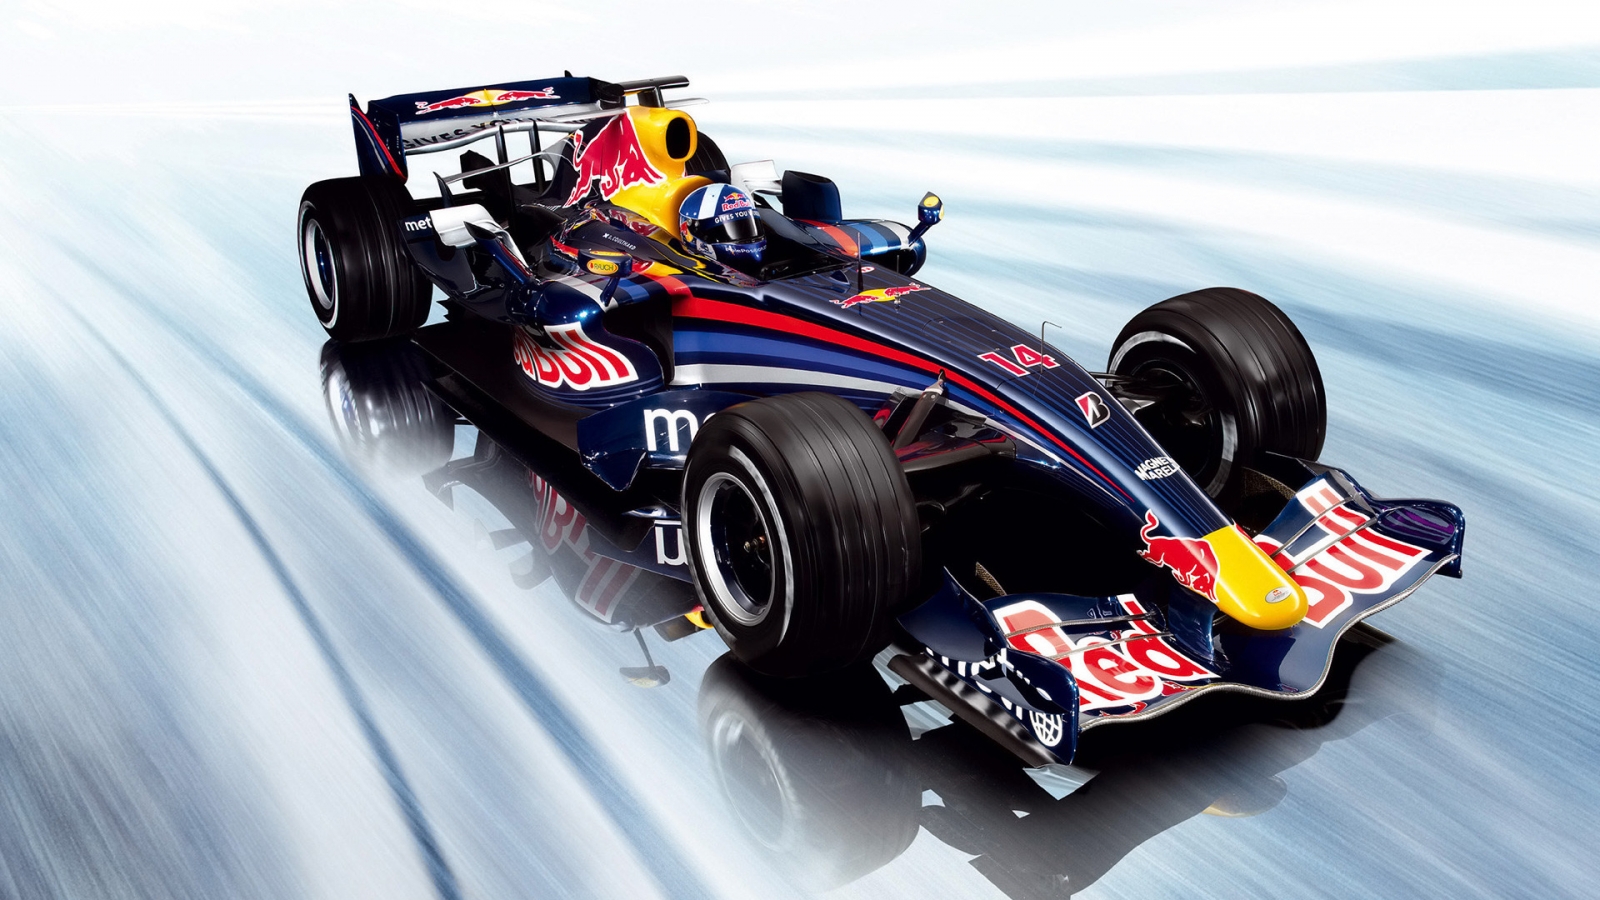 Red Bull RB3 F1 Studio for 1600 x 900 HDTV resolution